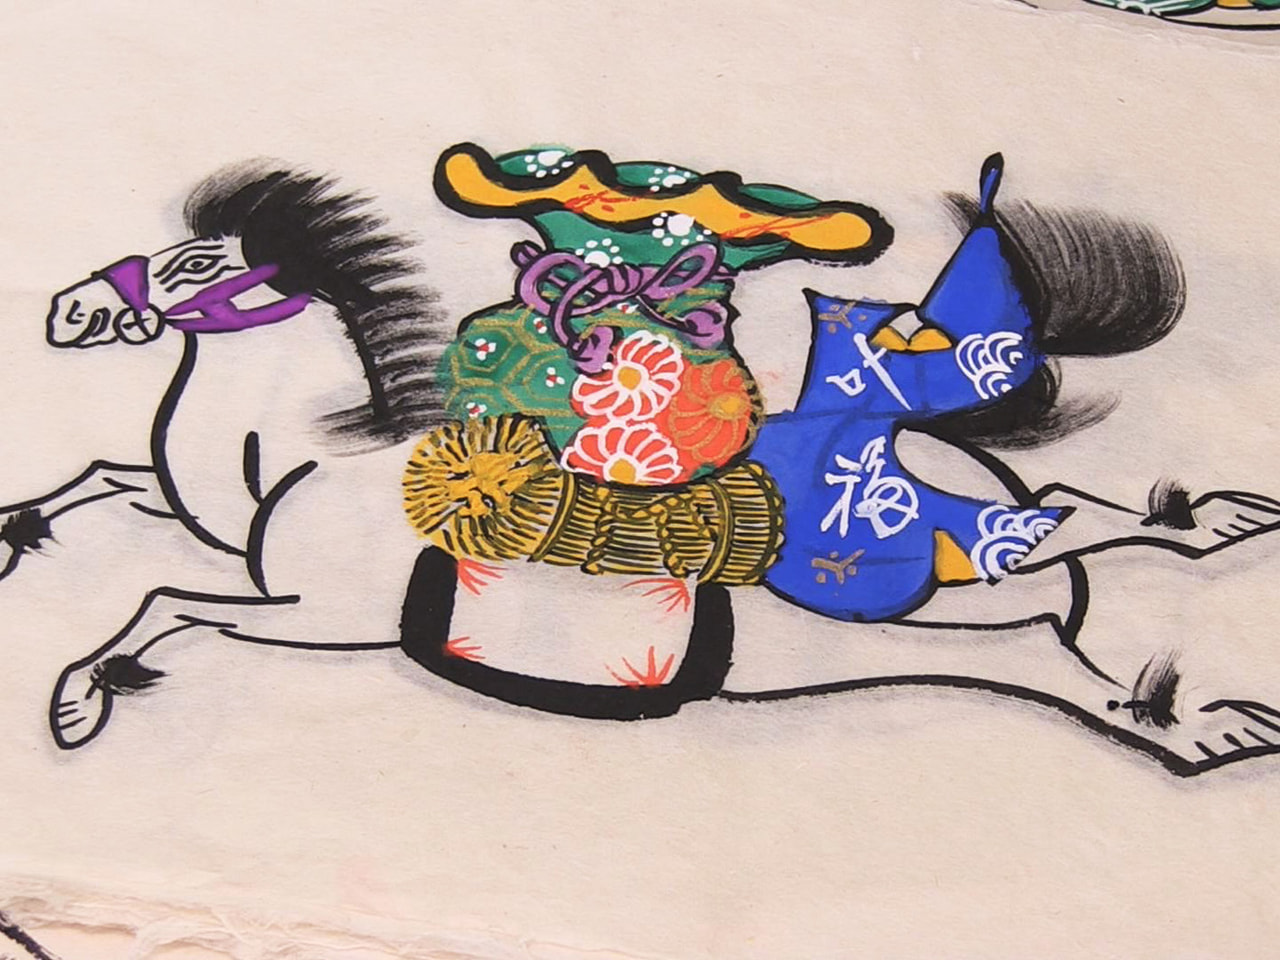 飛騨高山の夏の風物詩「松倉絵馬市」に向け、縁起物の紙絵馬づくりが最盛期を迎えてい...